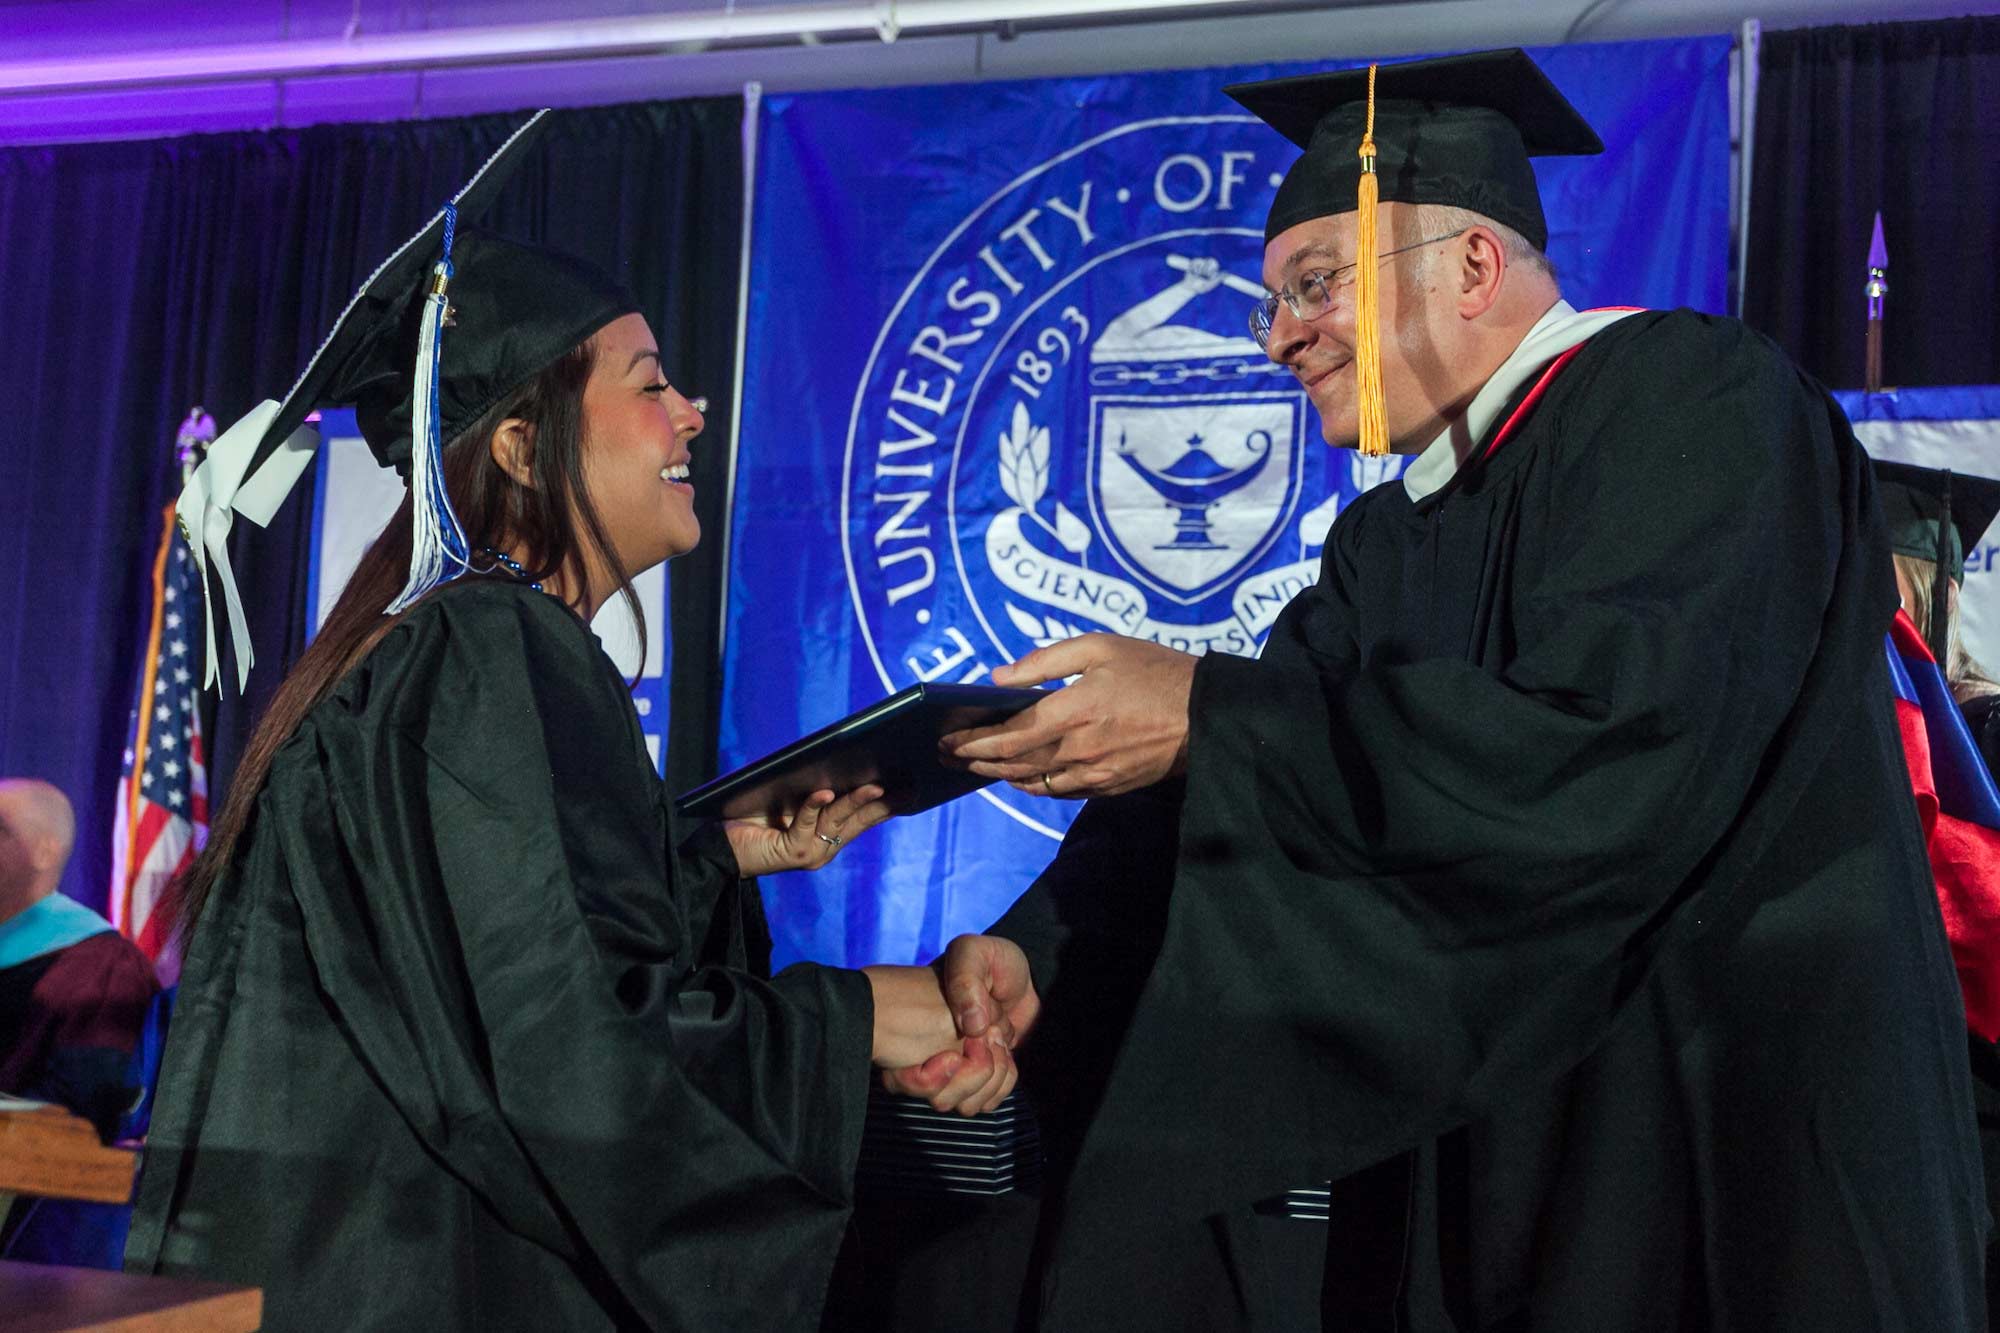 Dean giving student diploma at graduation